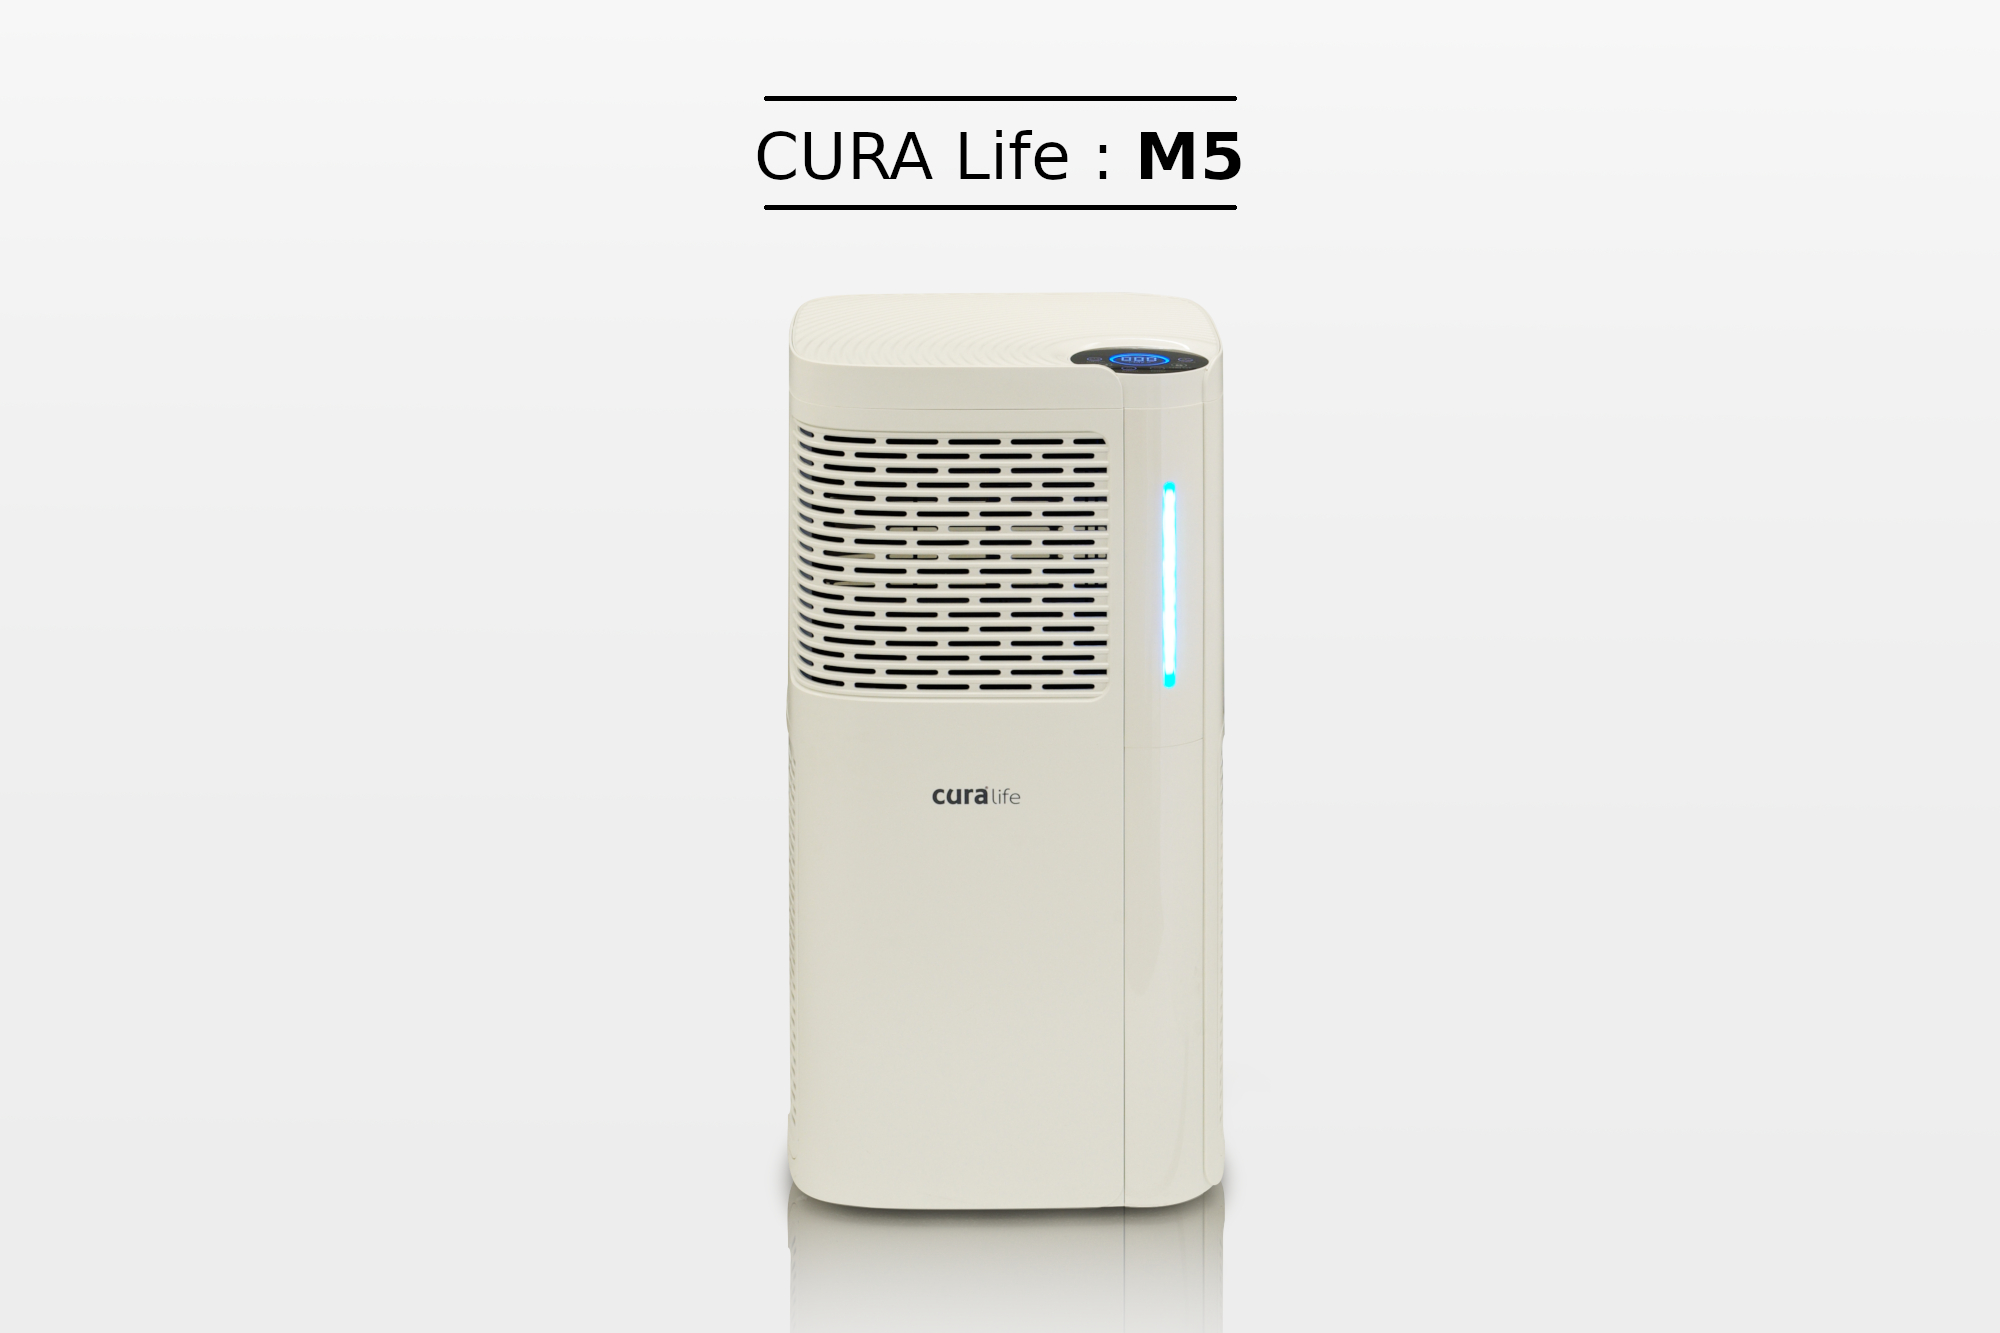 เครื่องฟอกอากาศ กรองดักกำาจัดฝุ่นด้วยระบบ Pre-filter ร่วมด้วยระบบ HEPA filter จึงทำให้สามารถดักจับฝุ่นละอองในอากาศที่มีขนาดเล็กไม่เกิน 25 ไมครอน หรือ PM 2.5 ได้ ดักจับกลิ่นด้วย Activated Carbon ยี่ห้อ CURA Life รุ่น M5